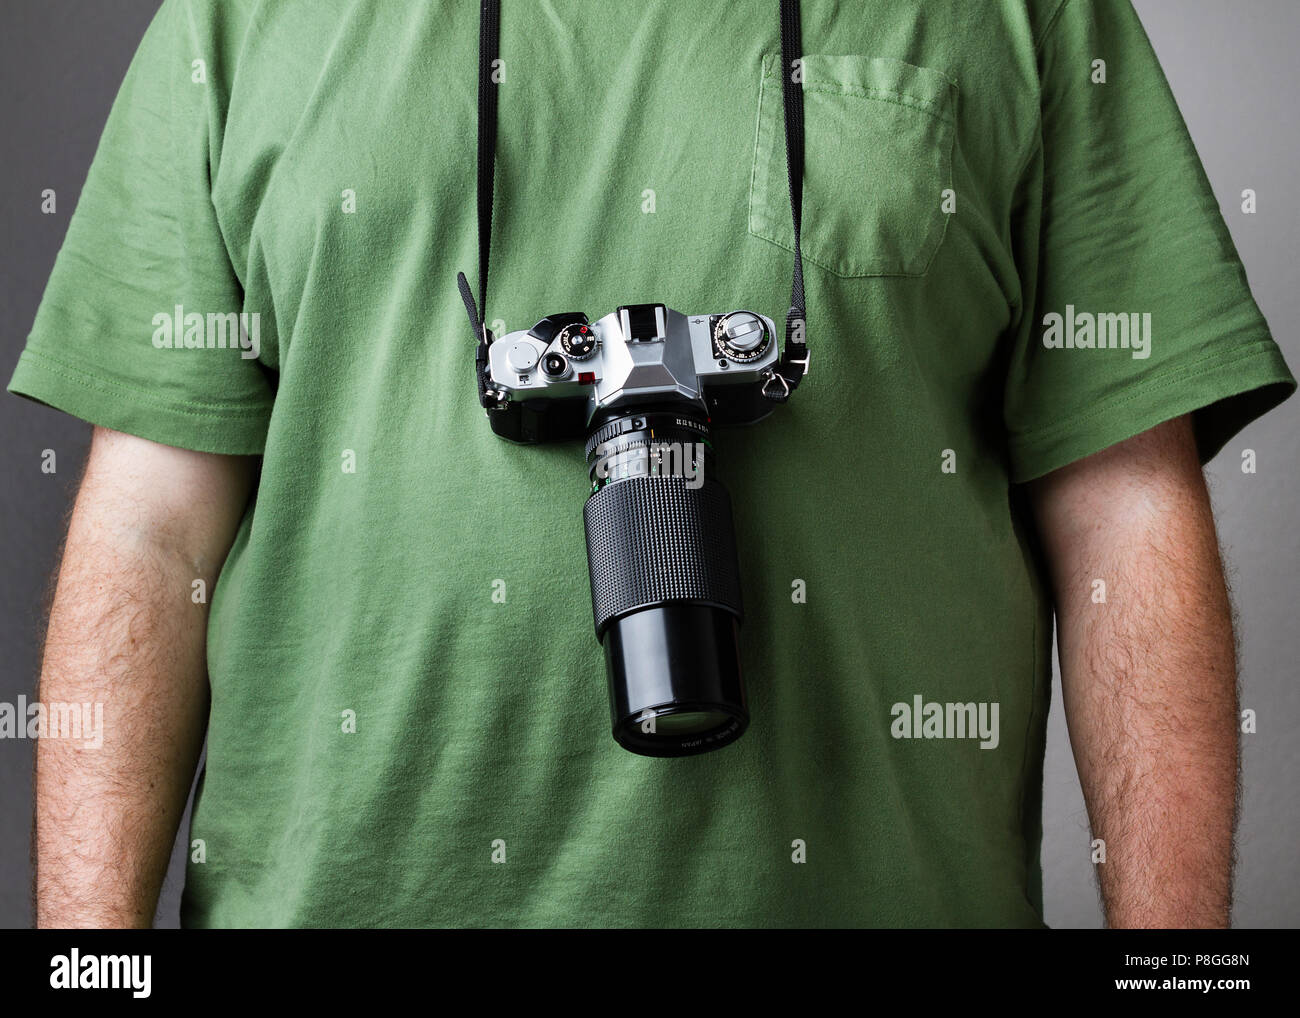 Generische Suche film Kamera mit allen Logos entfernt gegen eine mans Brust  geschnallt. Sieht aus wie typische touristische Stockfotografie - Alamy